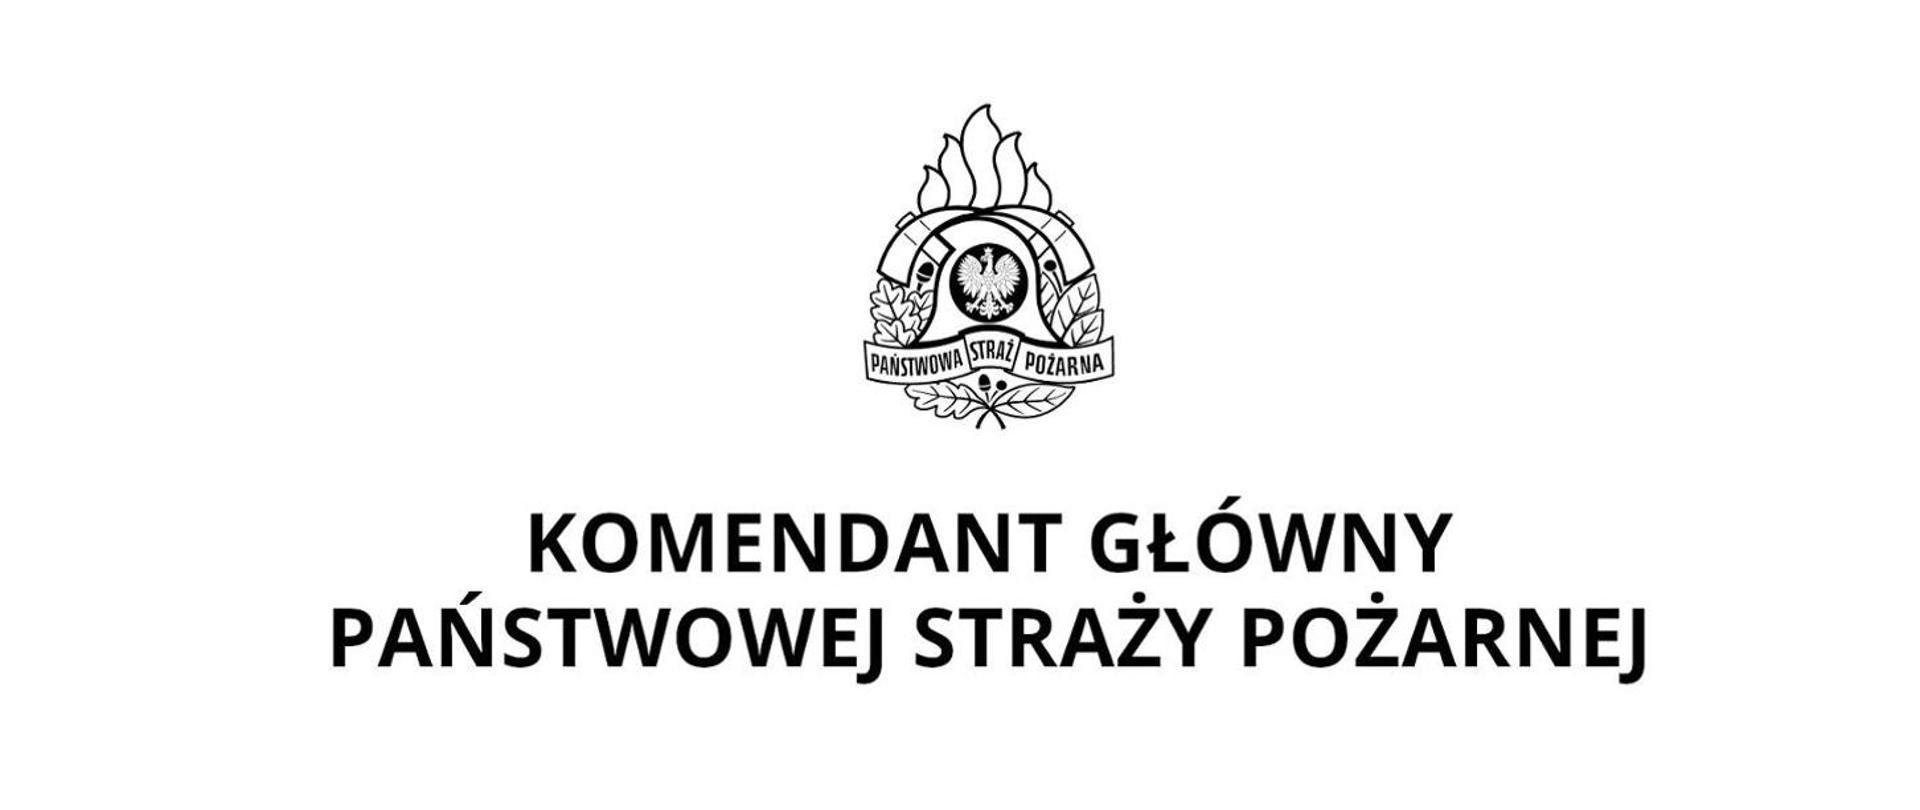 Baner z logo Państwowej Straży Pożarnej a pod nim napis Komendant Główny Państwowej Straży Pożarnej